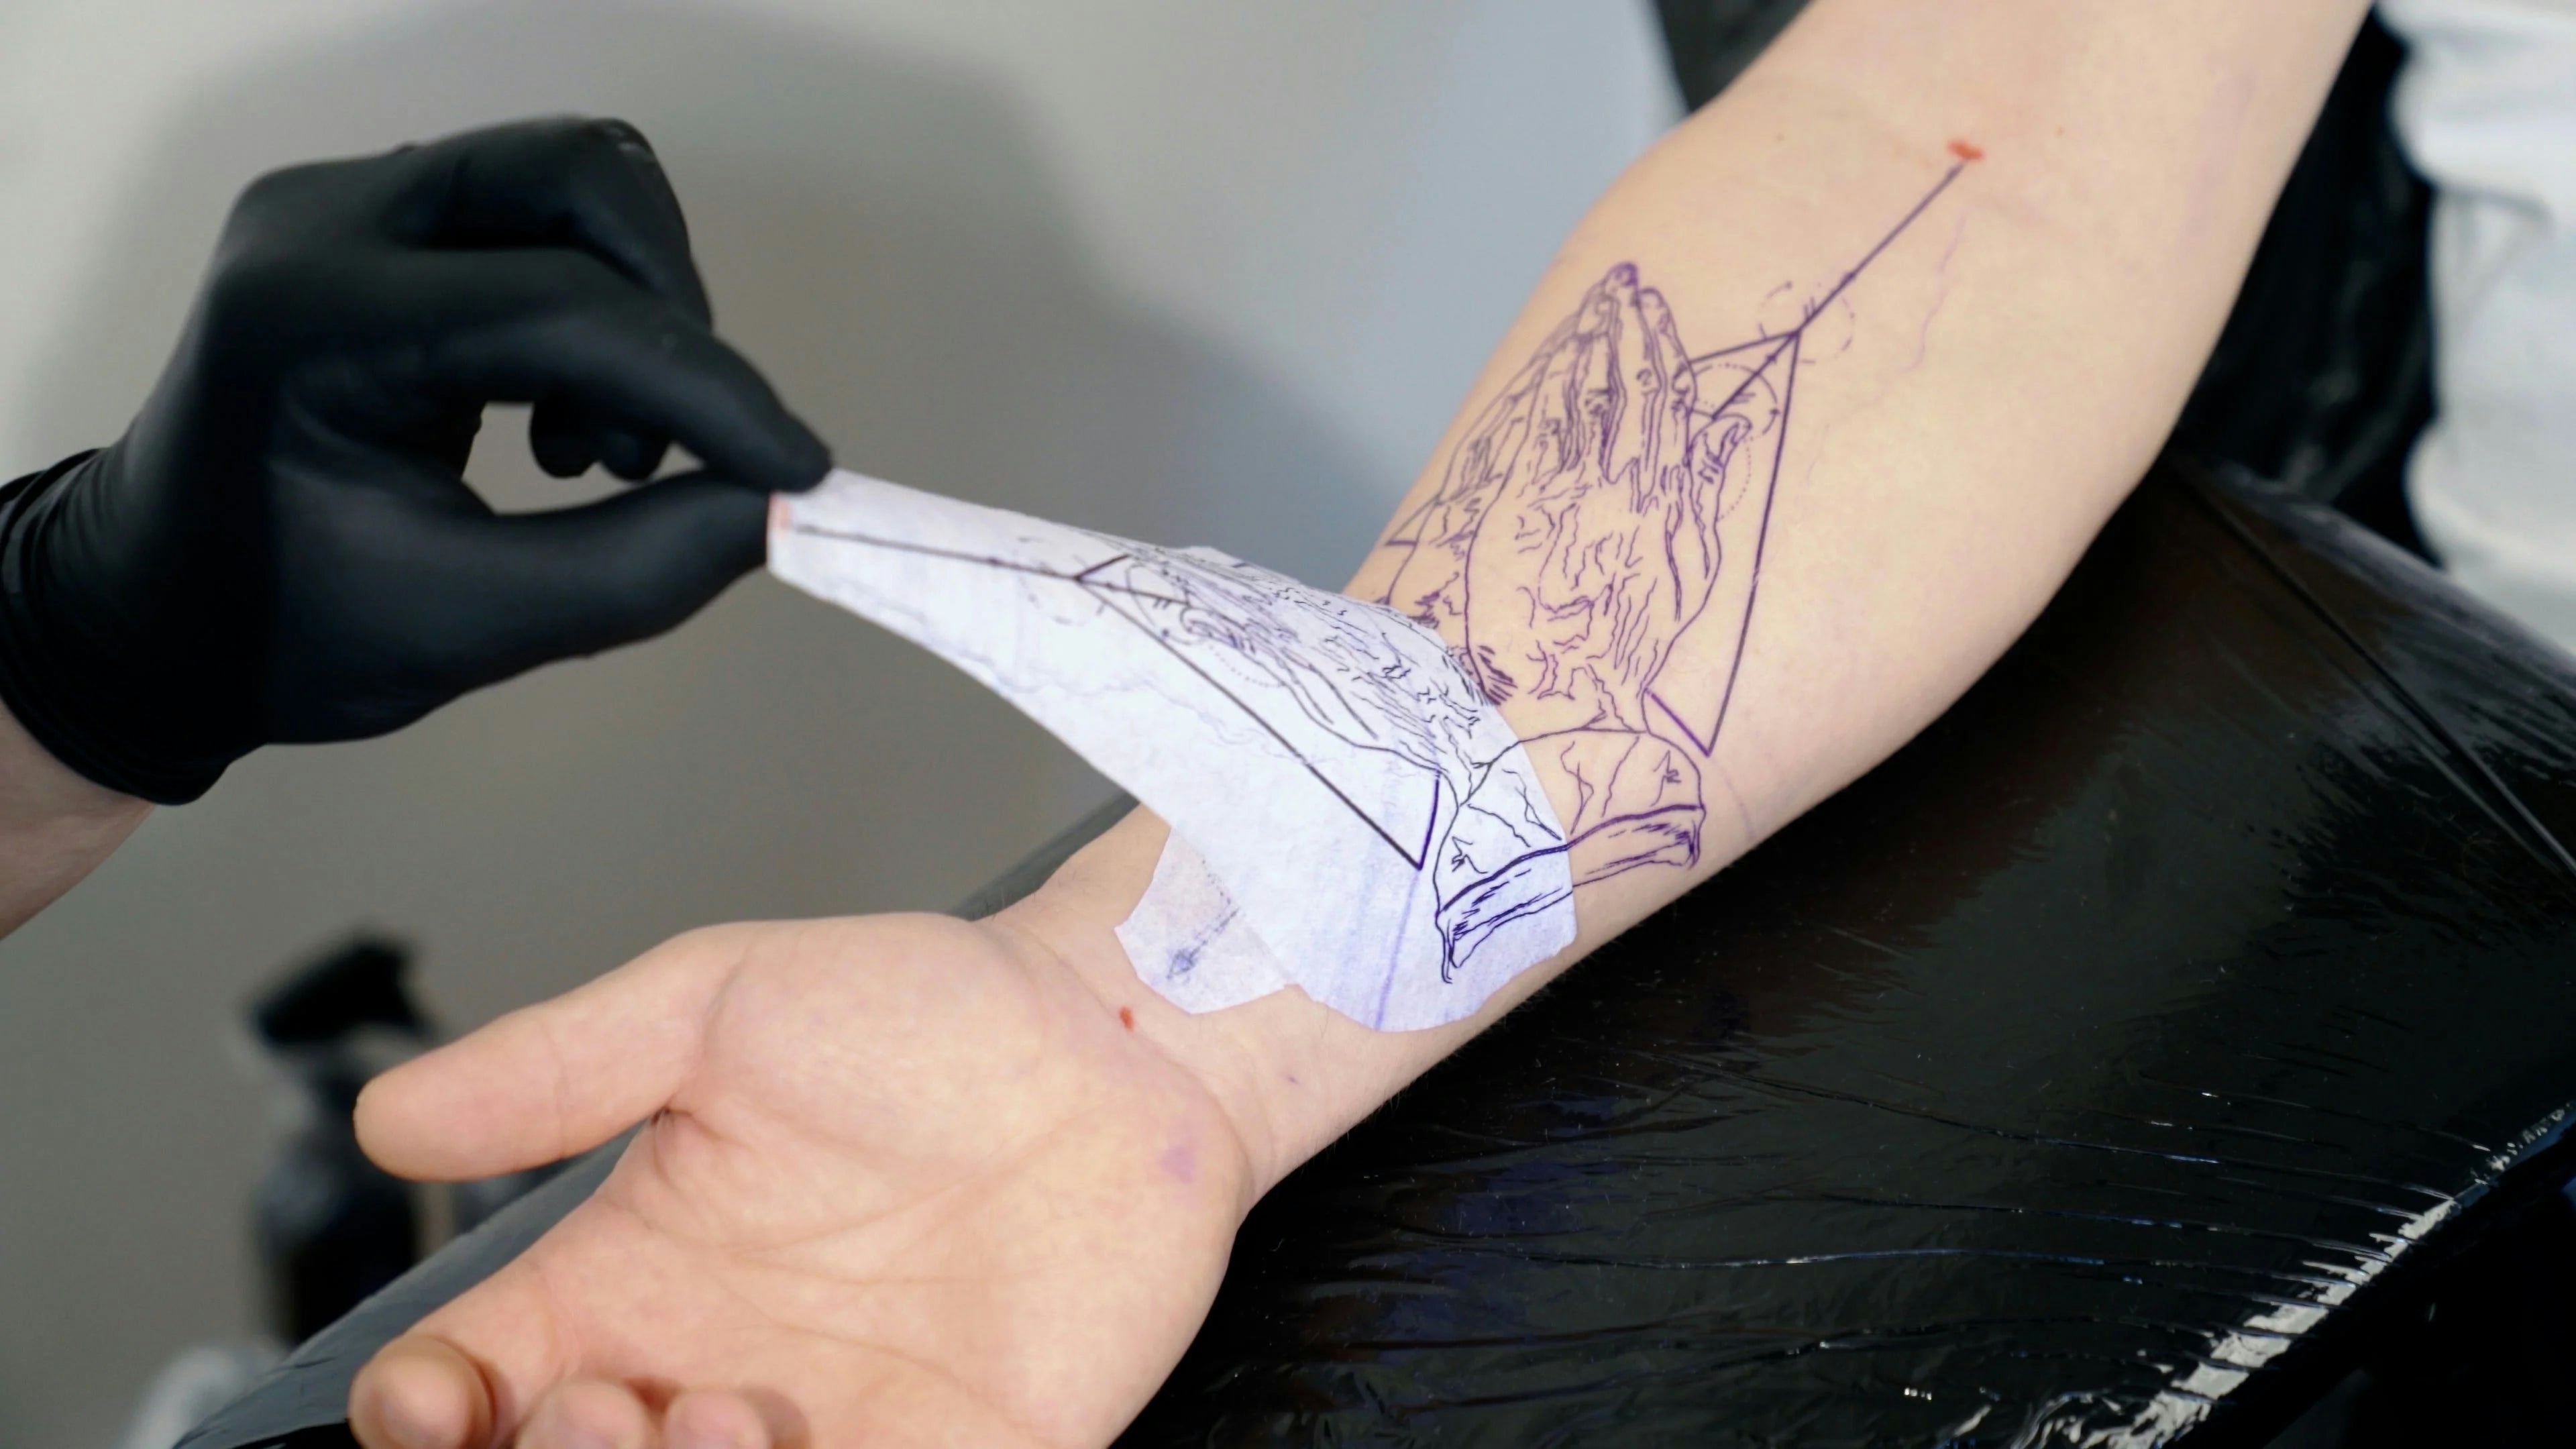 Transfer tattoo stencil to skin